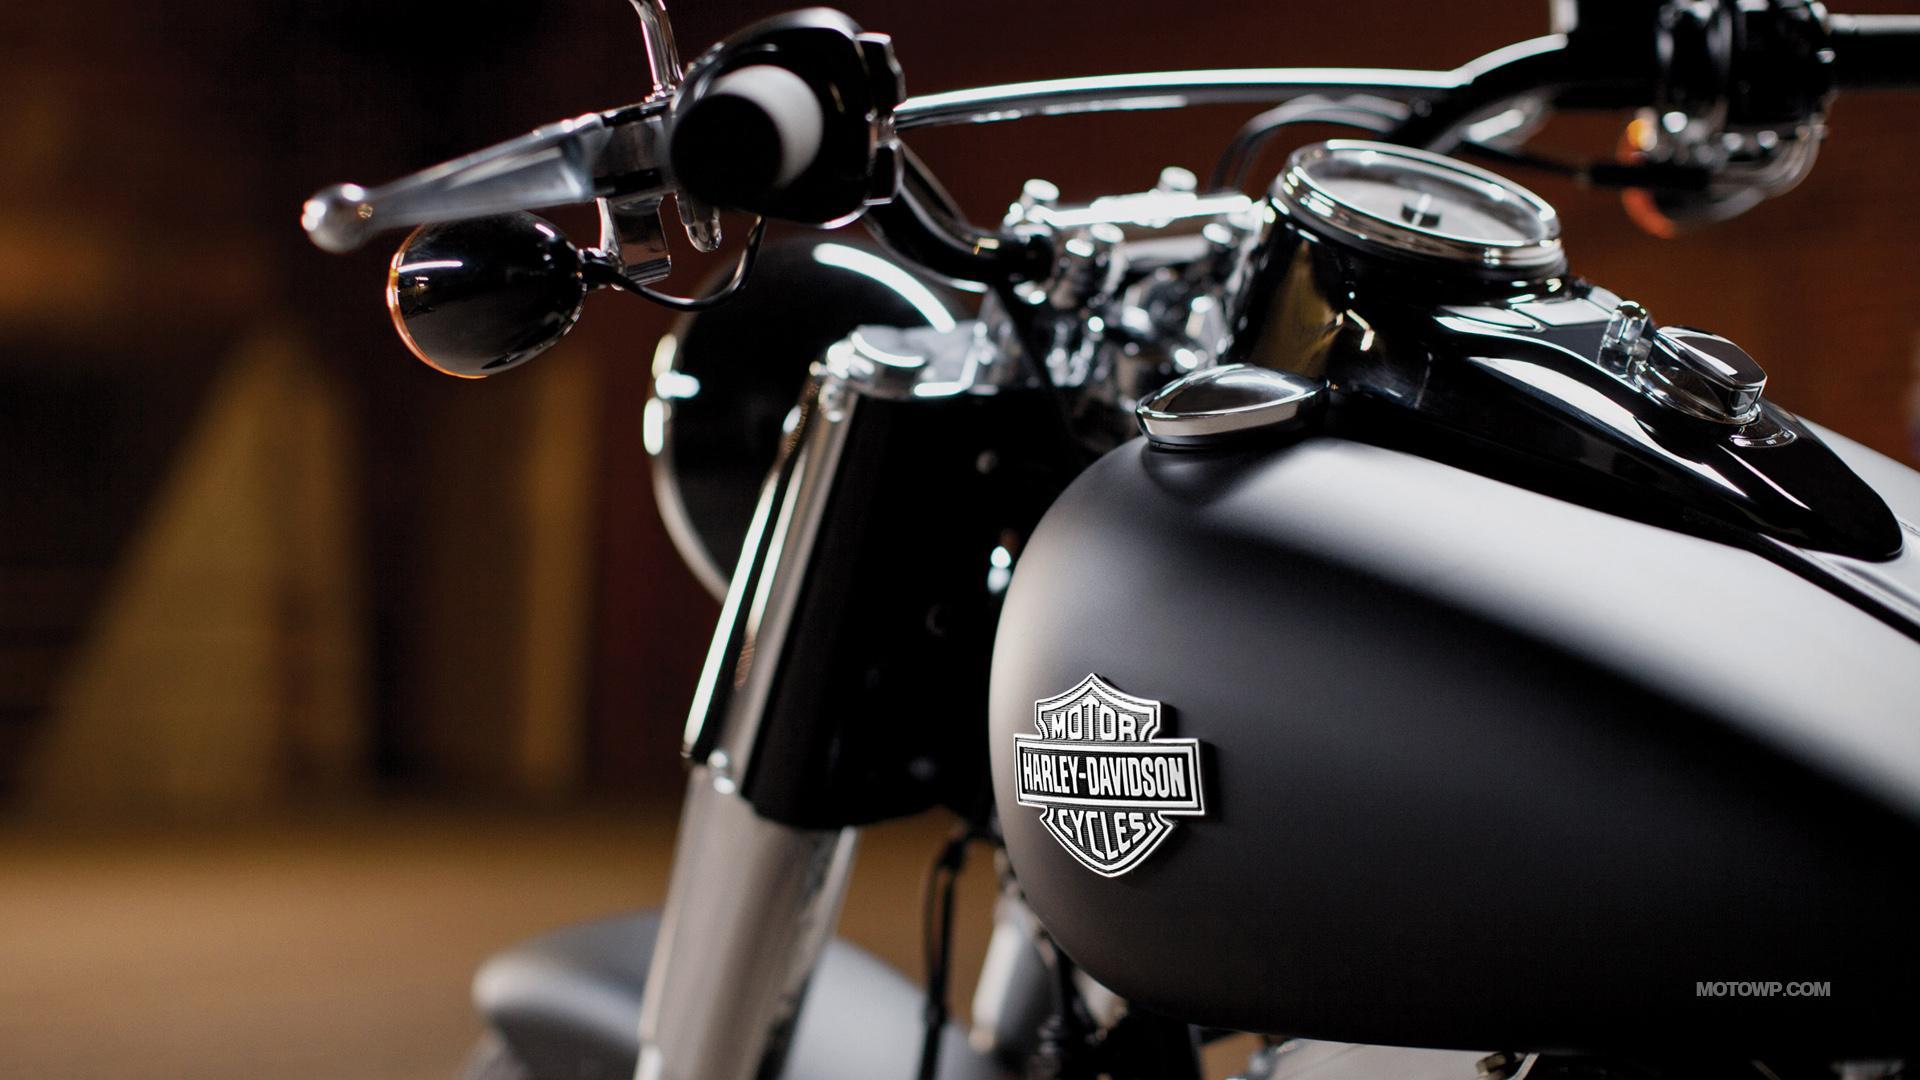 1920x1080 Harley Davidson hình nền điện thoại • dodskypict